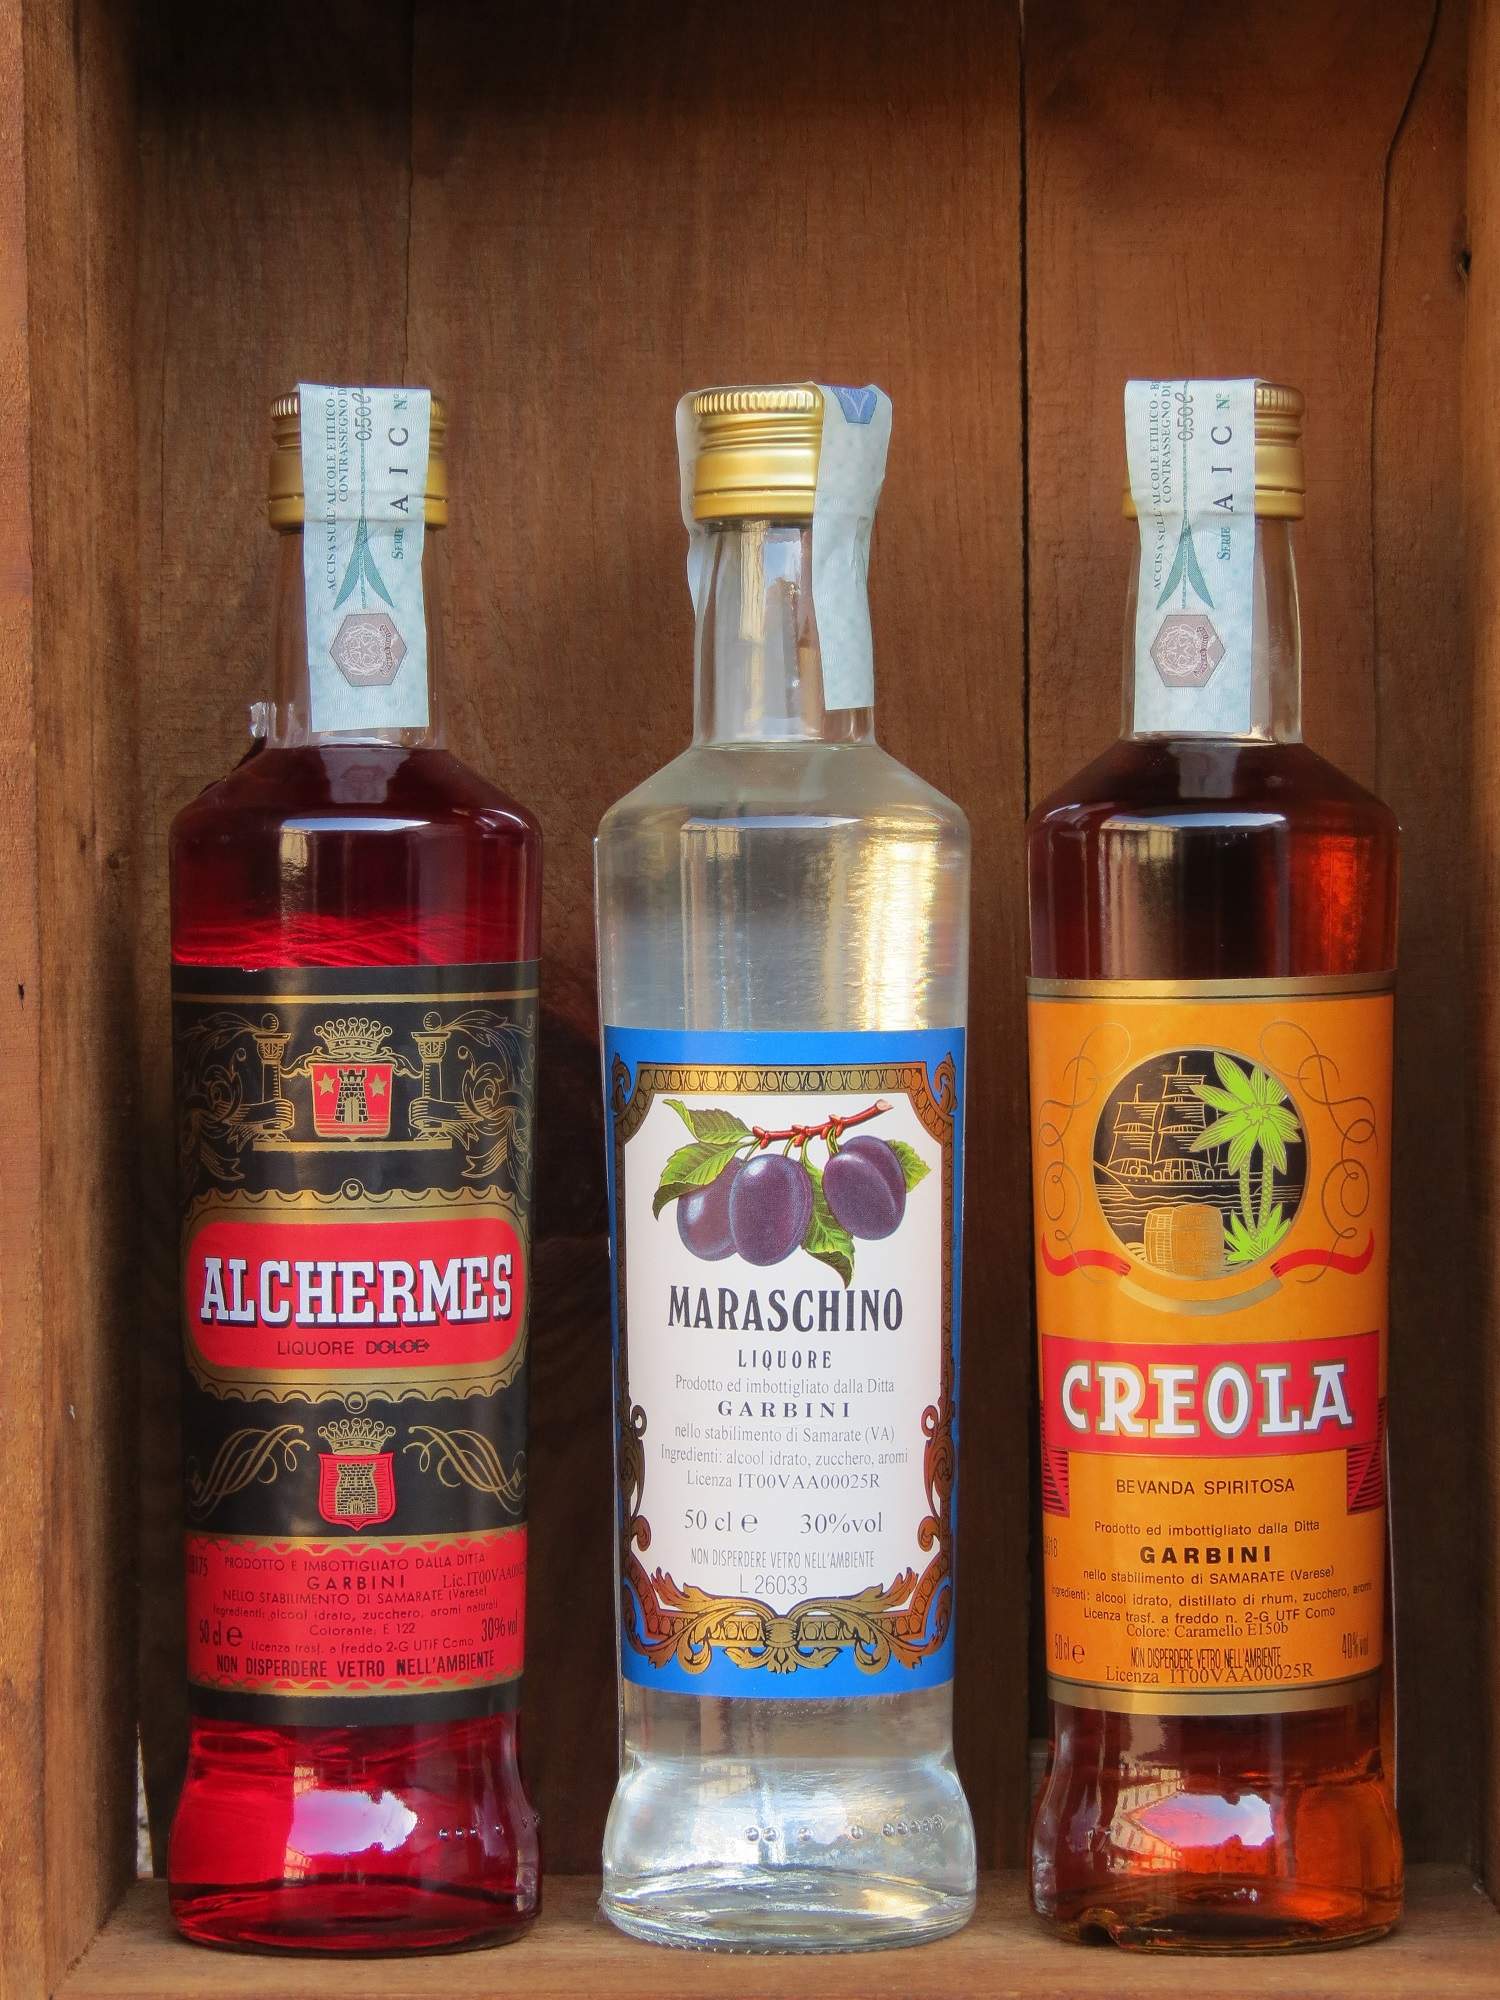 Liquori ottimi per la preparazione di ricette dolci e per arricchire macedonie di frutta.